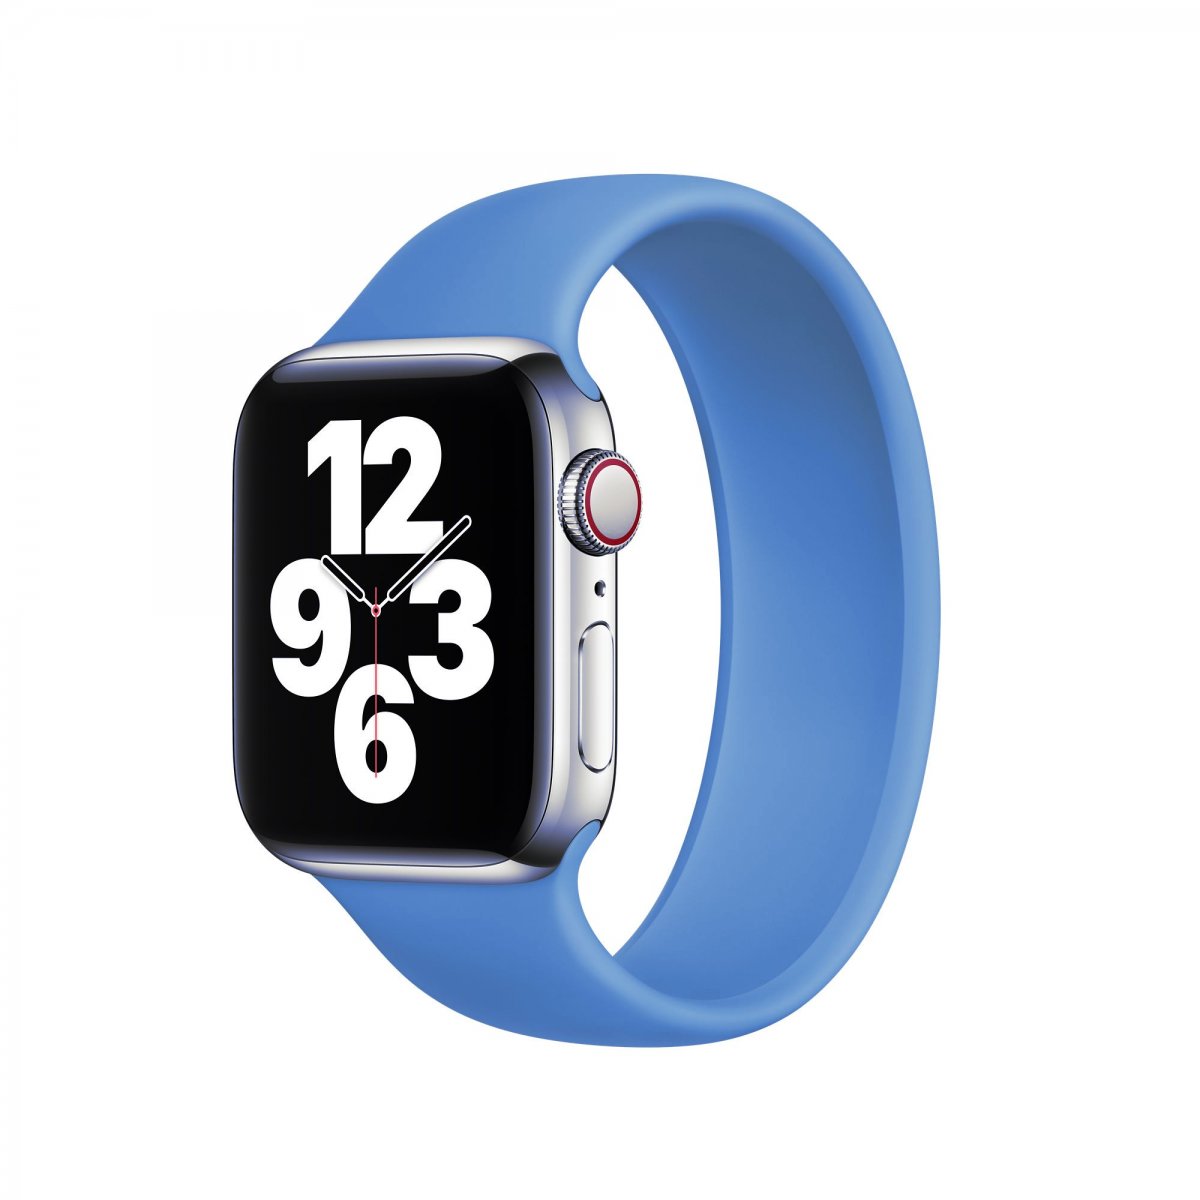 Řemínek iMore Solo Loop Apple Watch Series 1/2/3 38mm - Modrá (L)